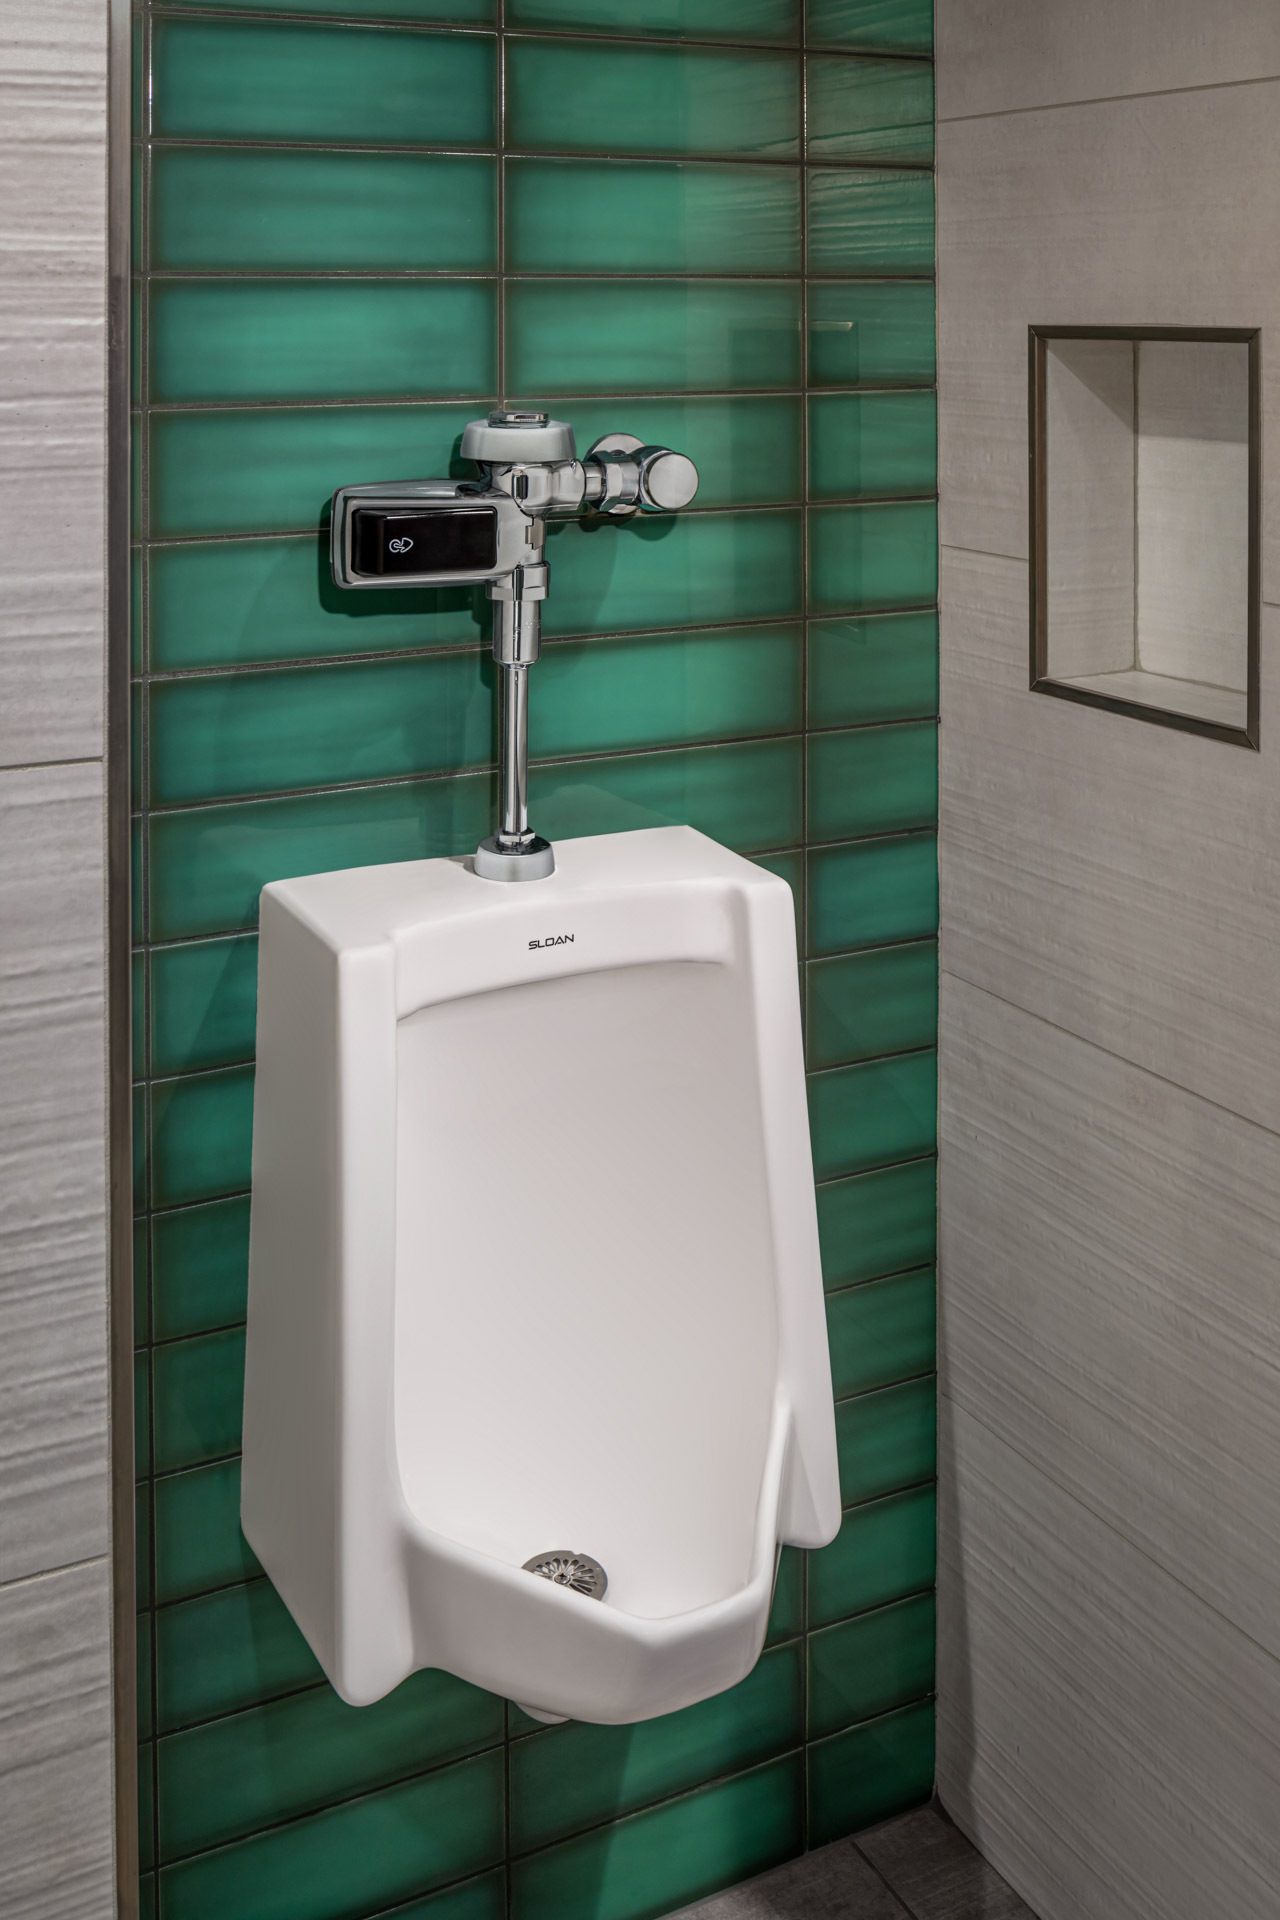 Plumbing fixture, Green, Bathroom, Toilet, Urinal, Purple, Rectangle, Fluid, Line